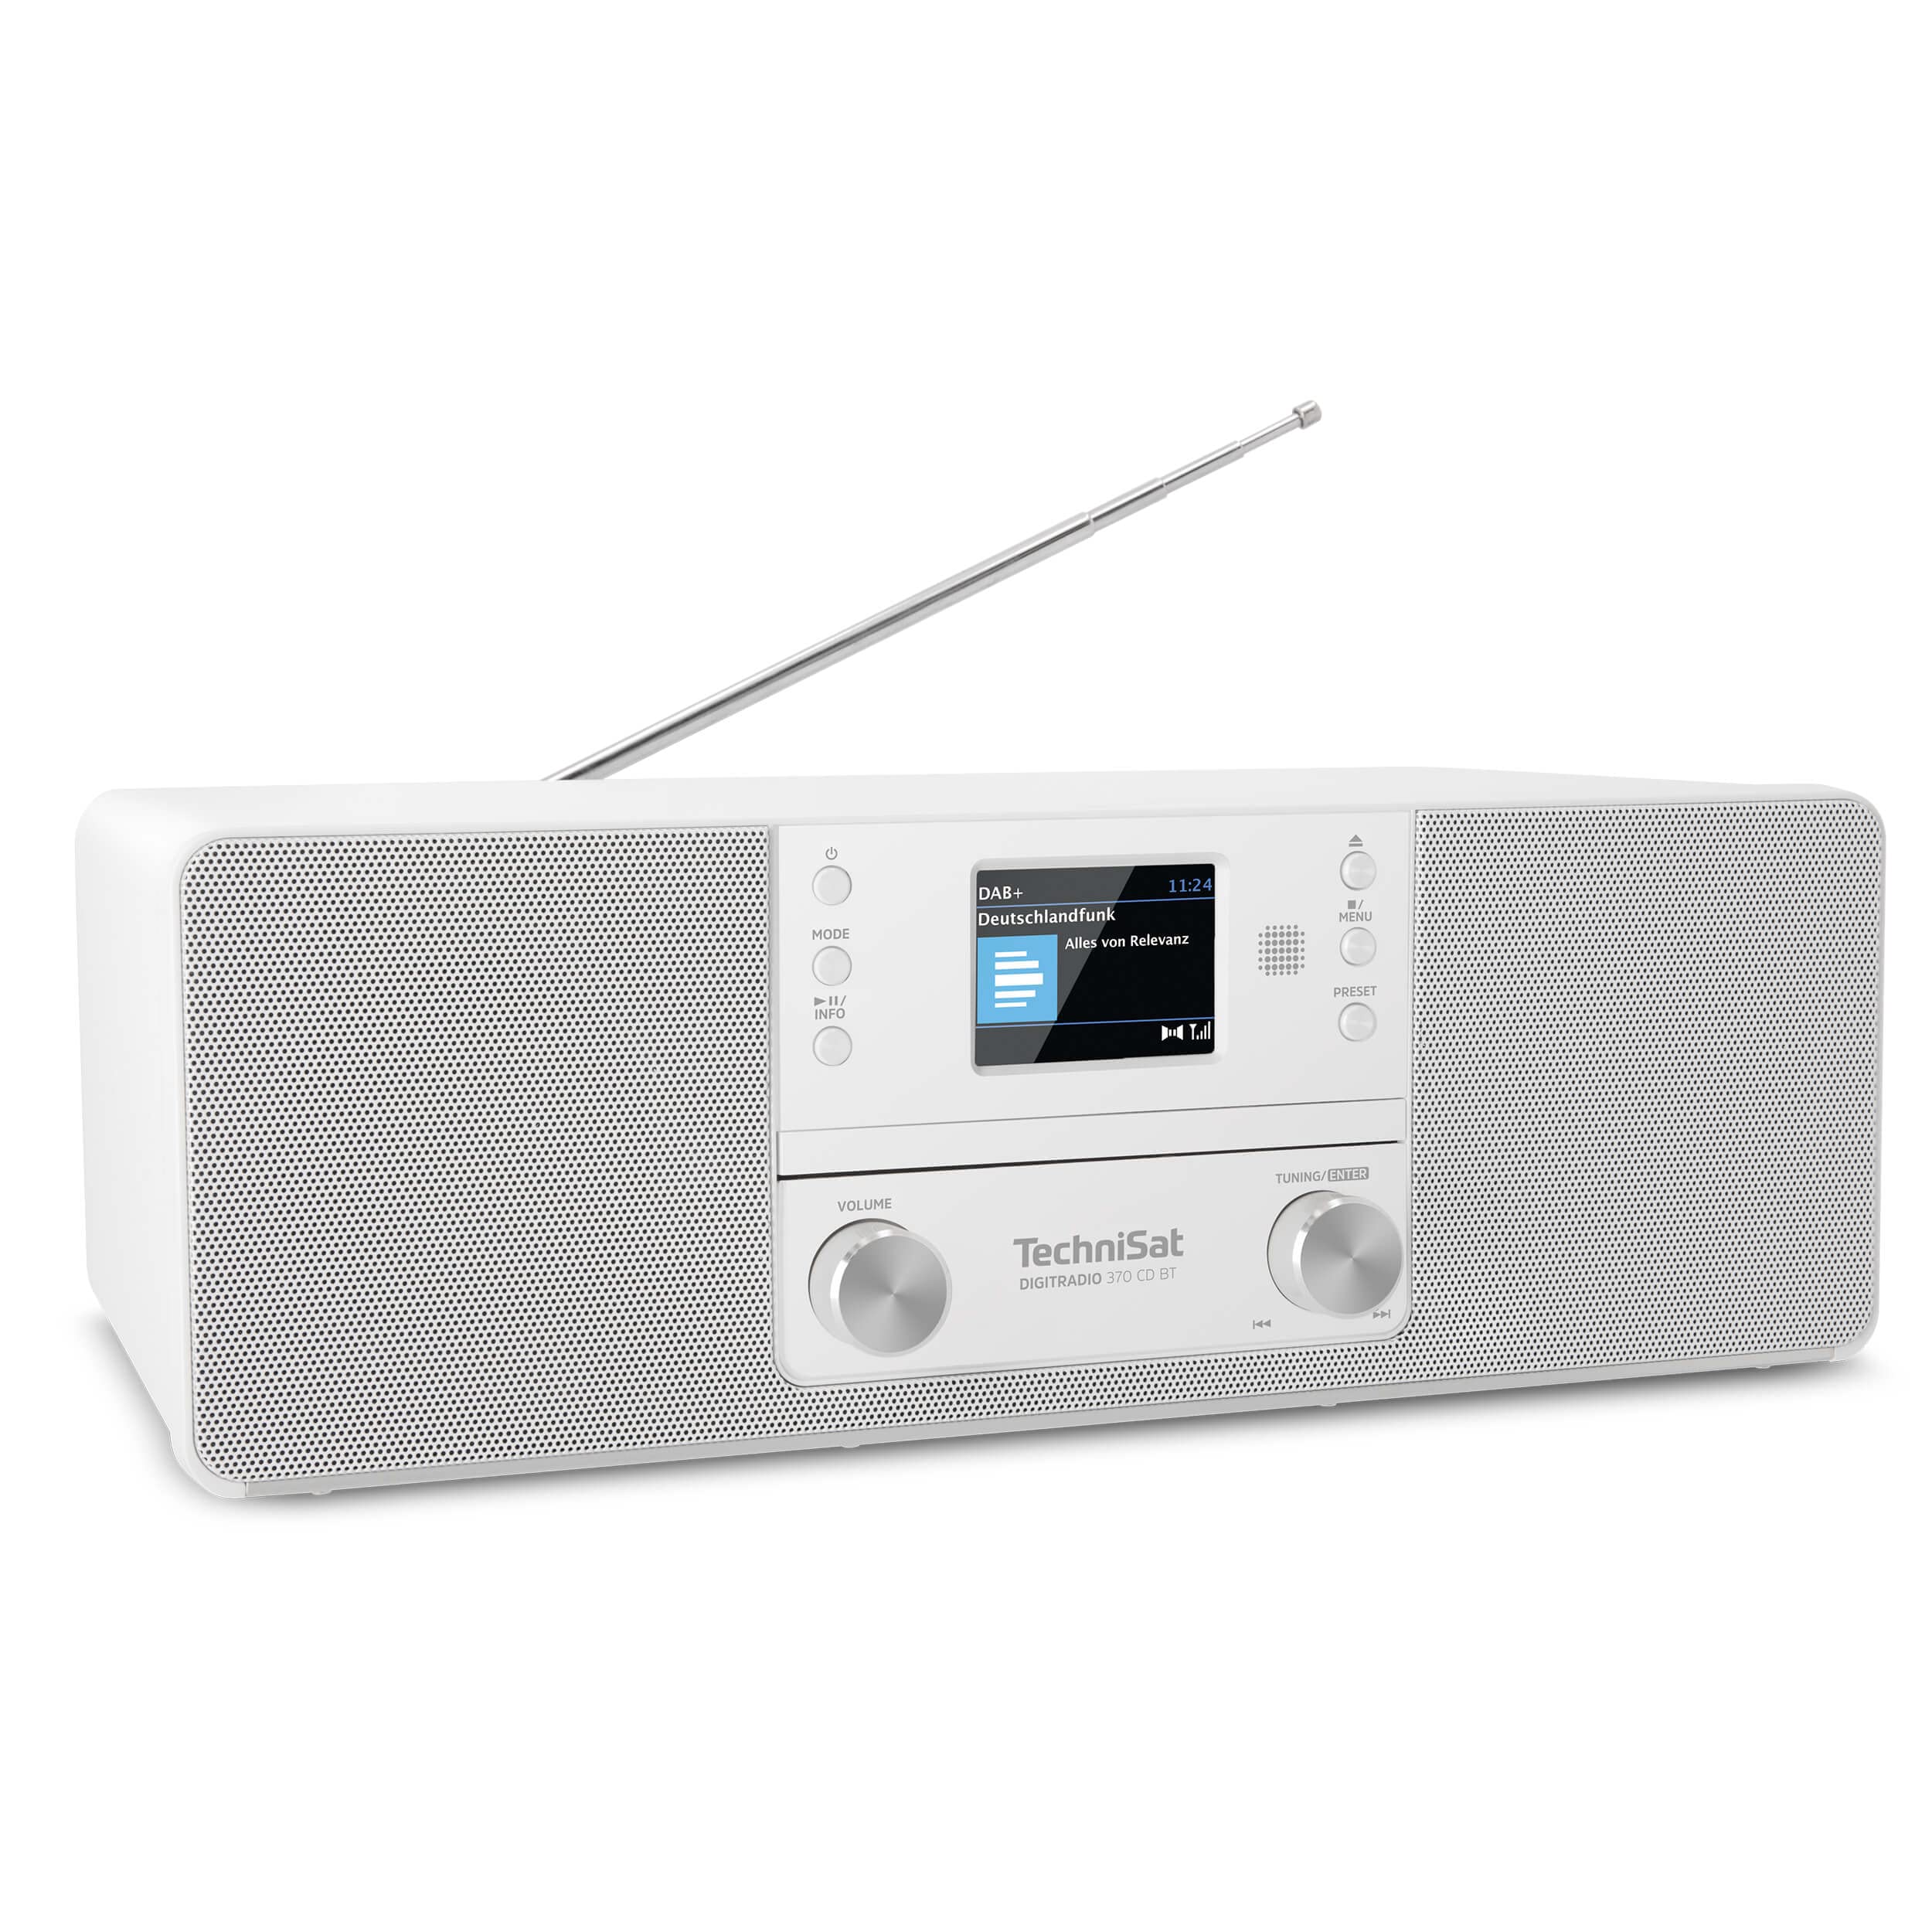 TechniSat DIGITRADIO 370 CD BT - Stereo Digitalradio (DAB+, UKW, CD-Player, Bluetooth, Farbdisplay, USB, AUX, Kopfhöreranschluss, Kompaktanlage, Wecker, 10 Watt, Fernbedienung) weiß